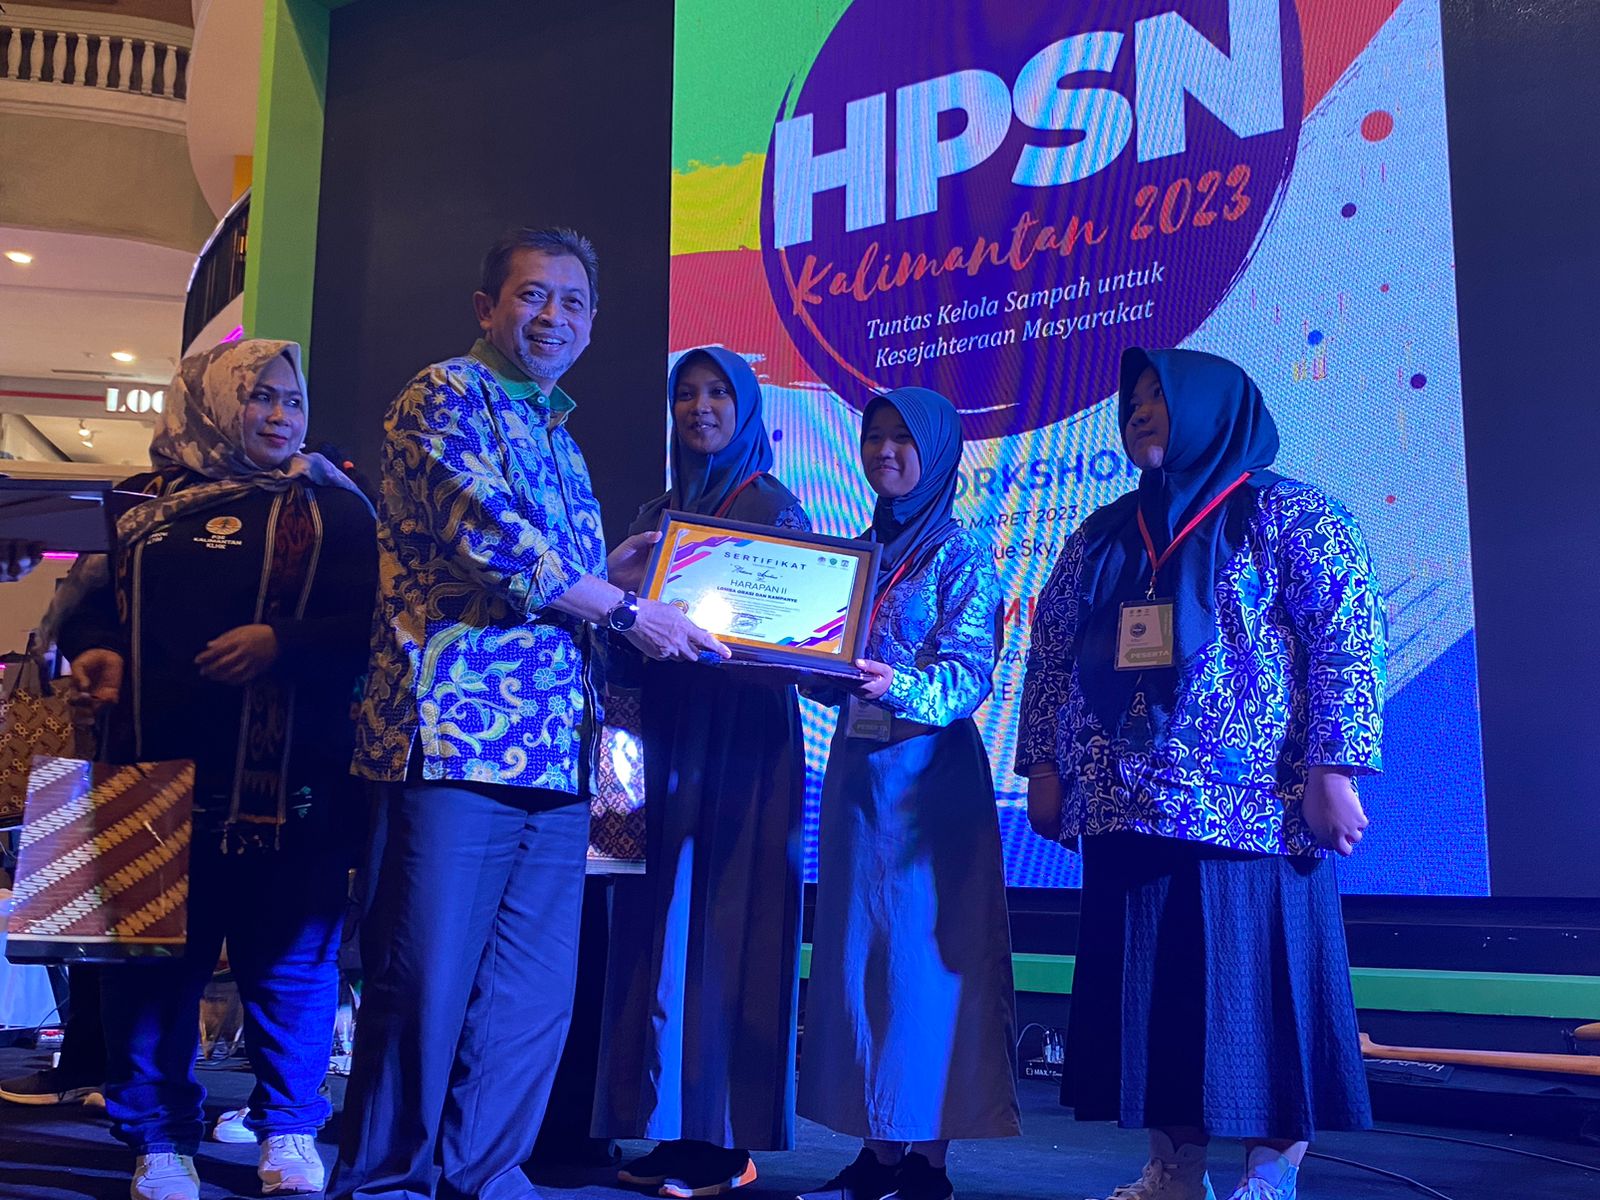 Hari Peduli Sampah Nasional (HPSN) Kalimantan 2023 ditutup oleh Wakil Gubernur Kaltim, Hadi Mulyadi di Atrium e-Walk BSB pada Selasa (21/3/2023) malam.